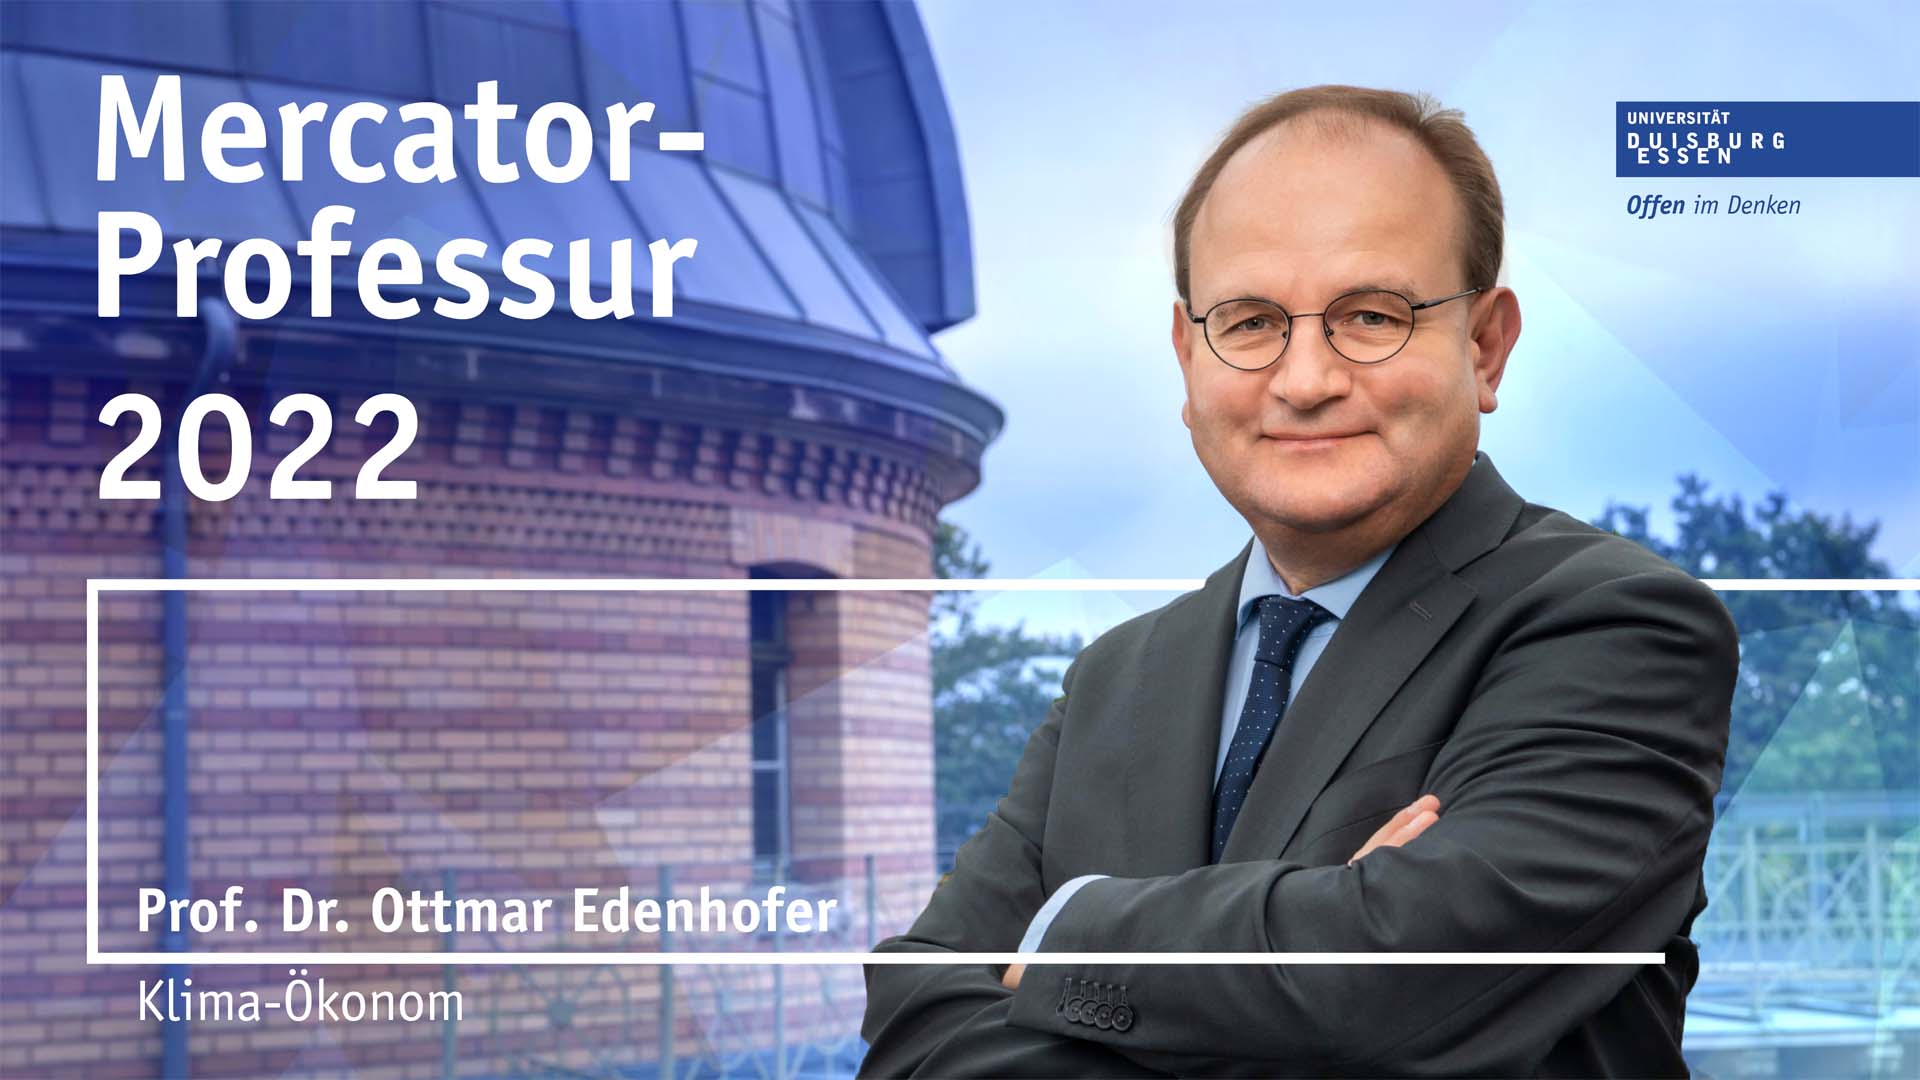 Mercator-Professor Ottmar Edenhofer